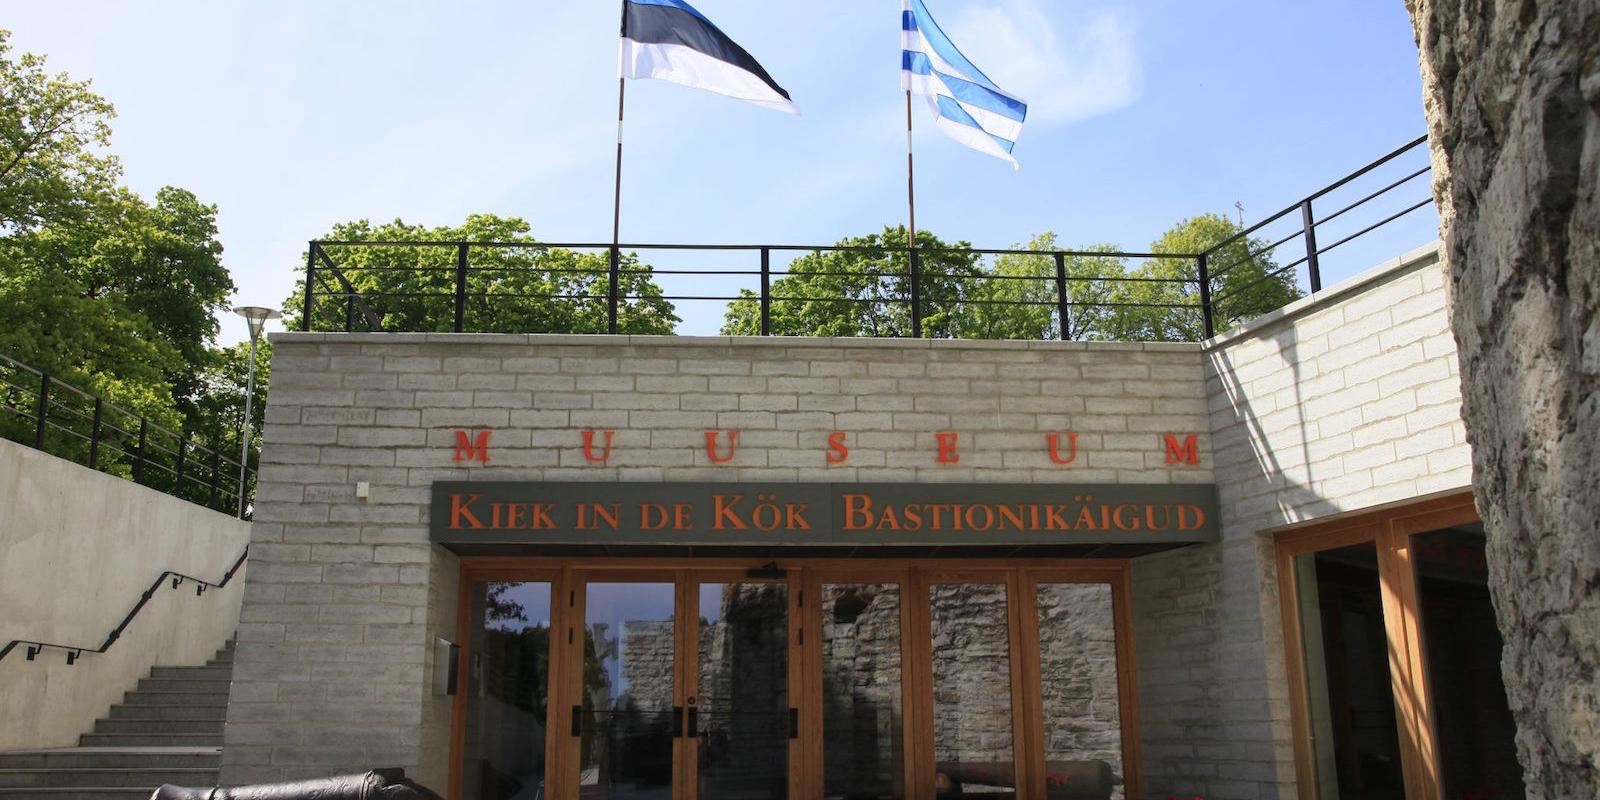 Cietokšņu muzejs "Kiek in de Kök"